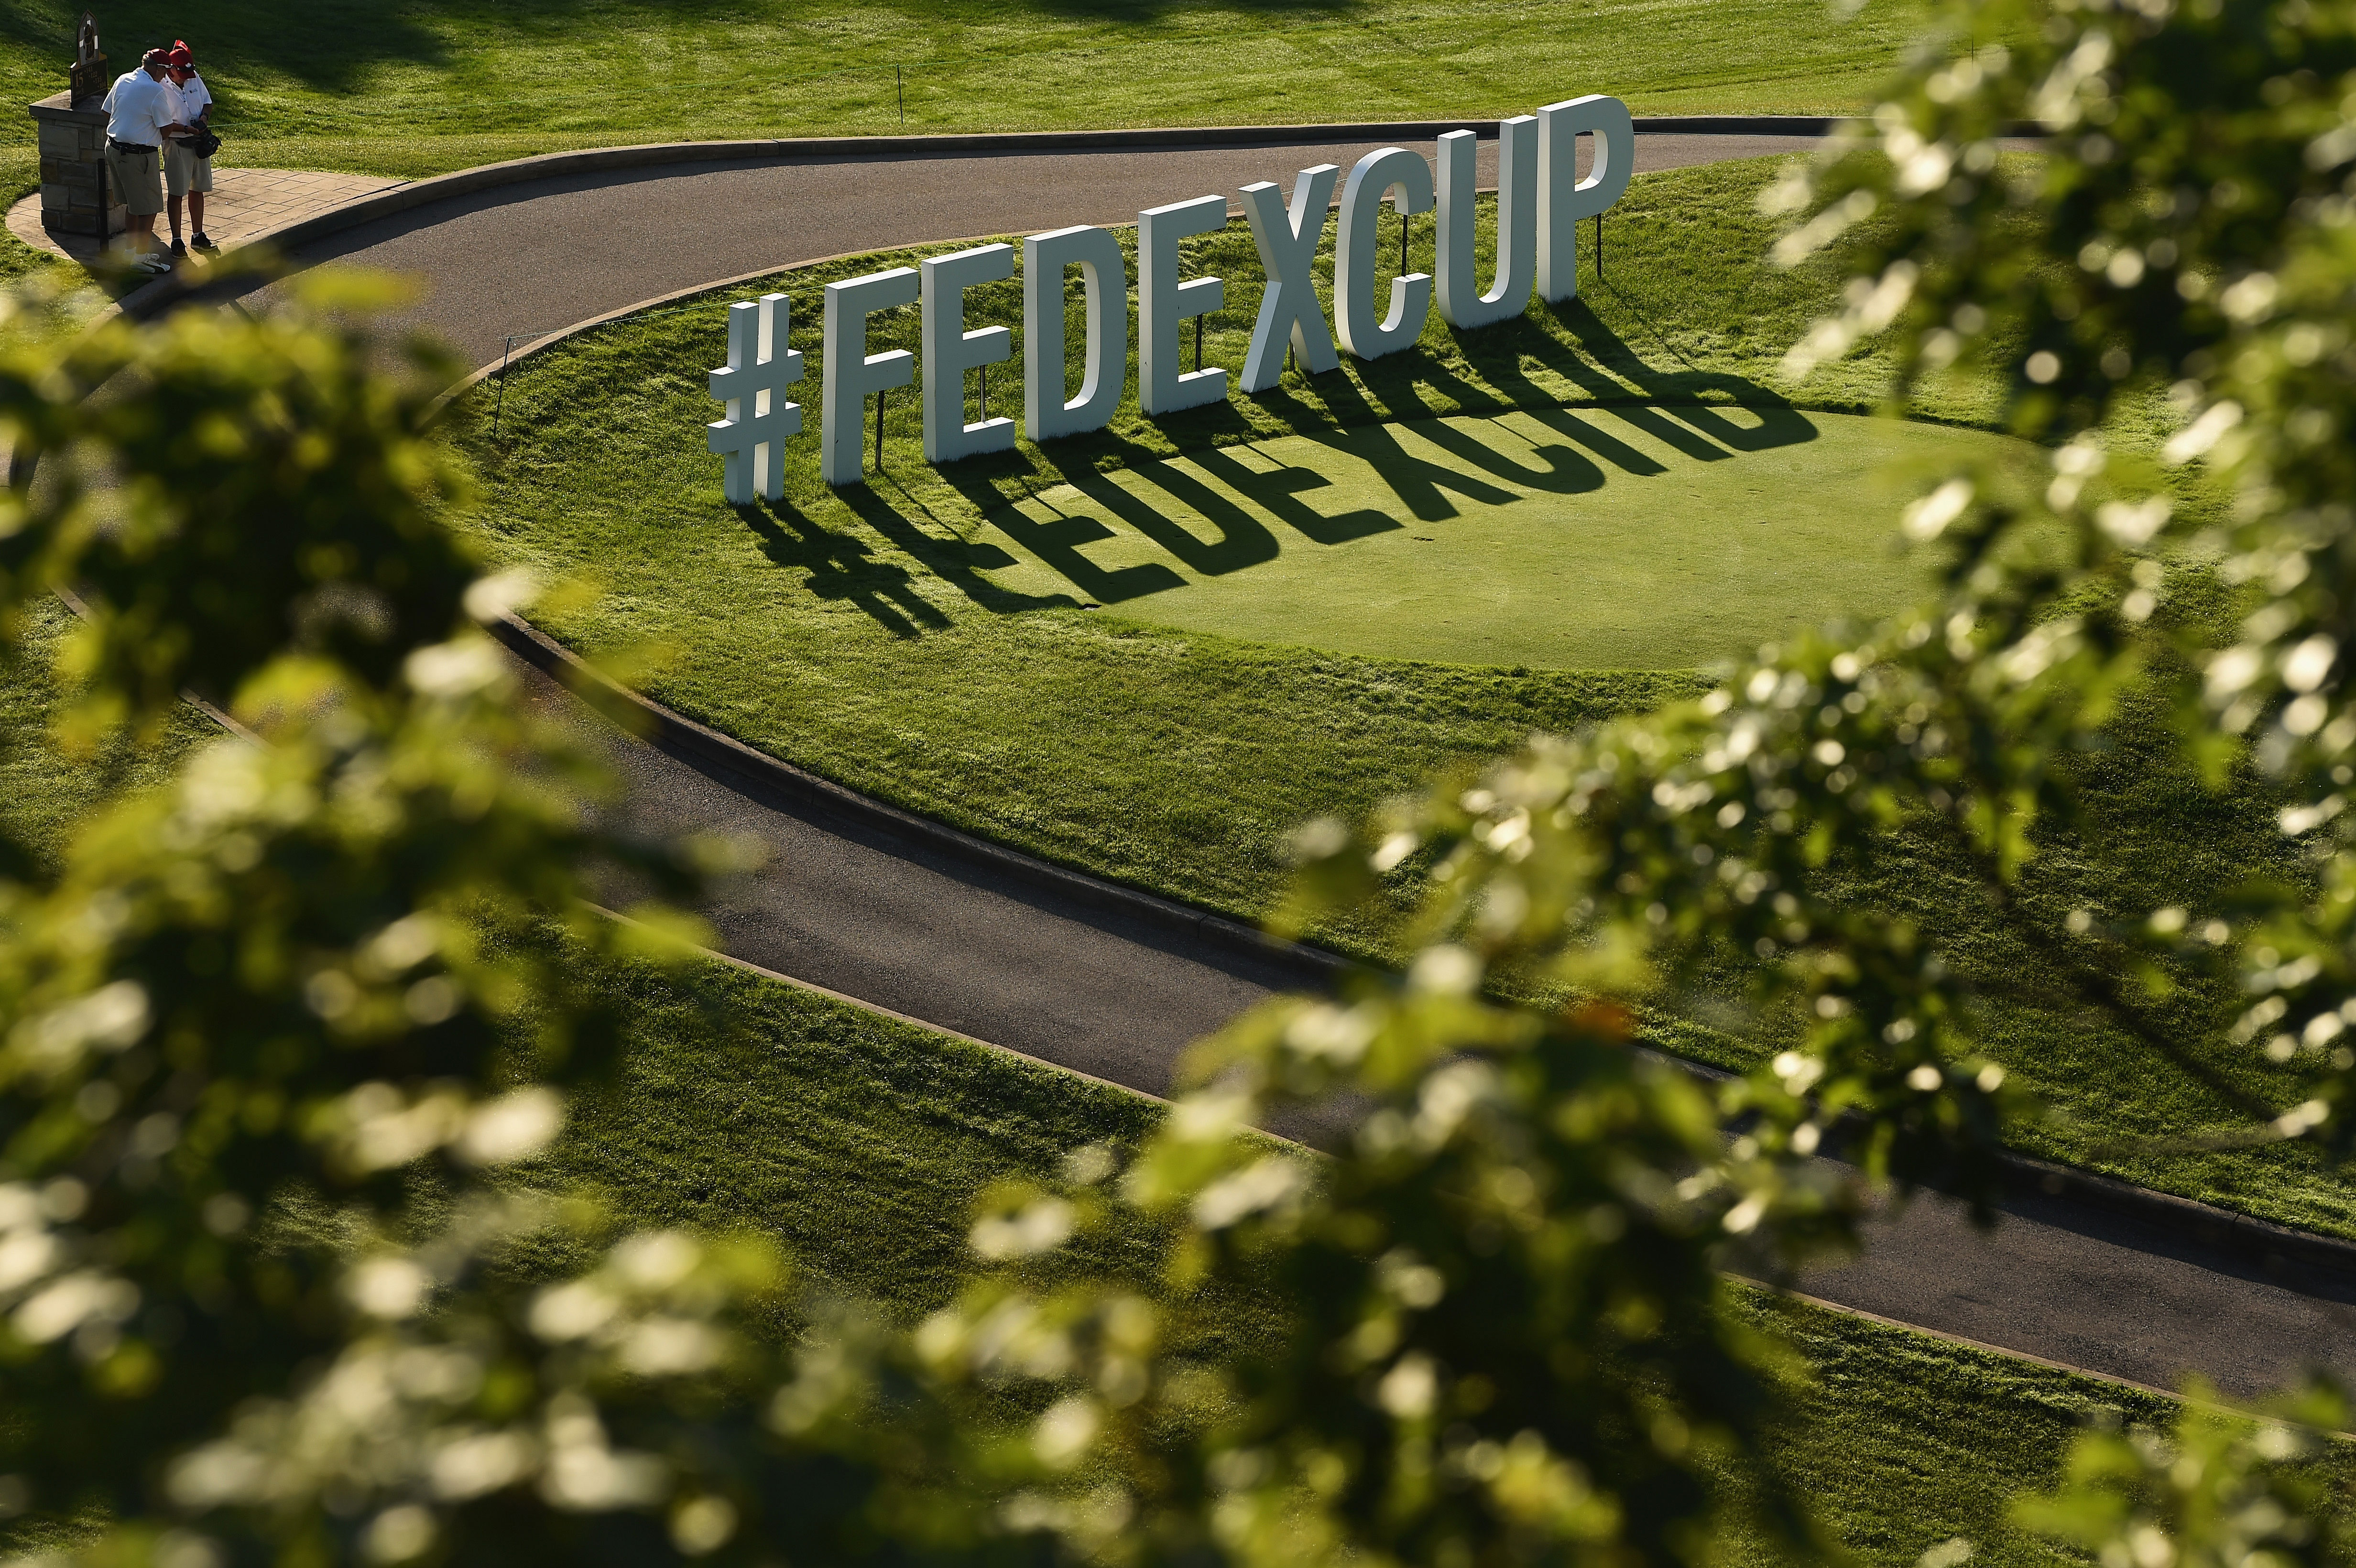 2020 21 Pga Tour Fedex Cup Points List, Four Seasons Lawn And Landscape Brandon Msc